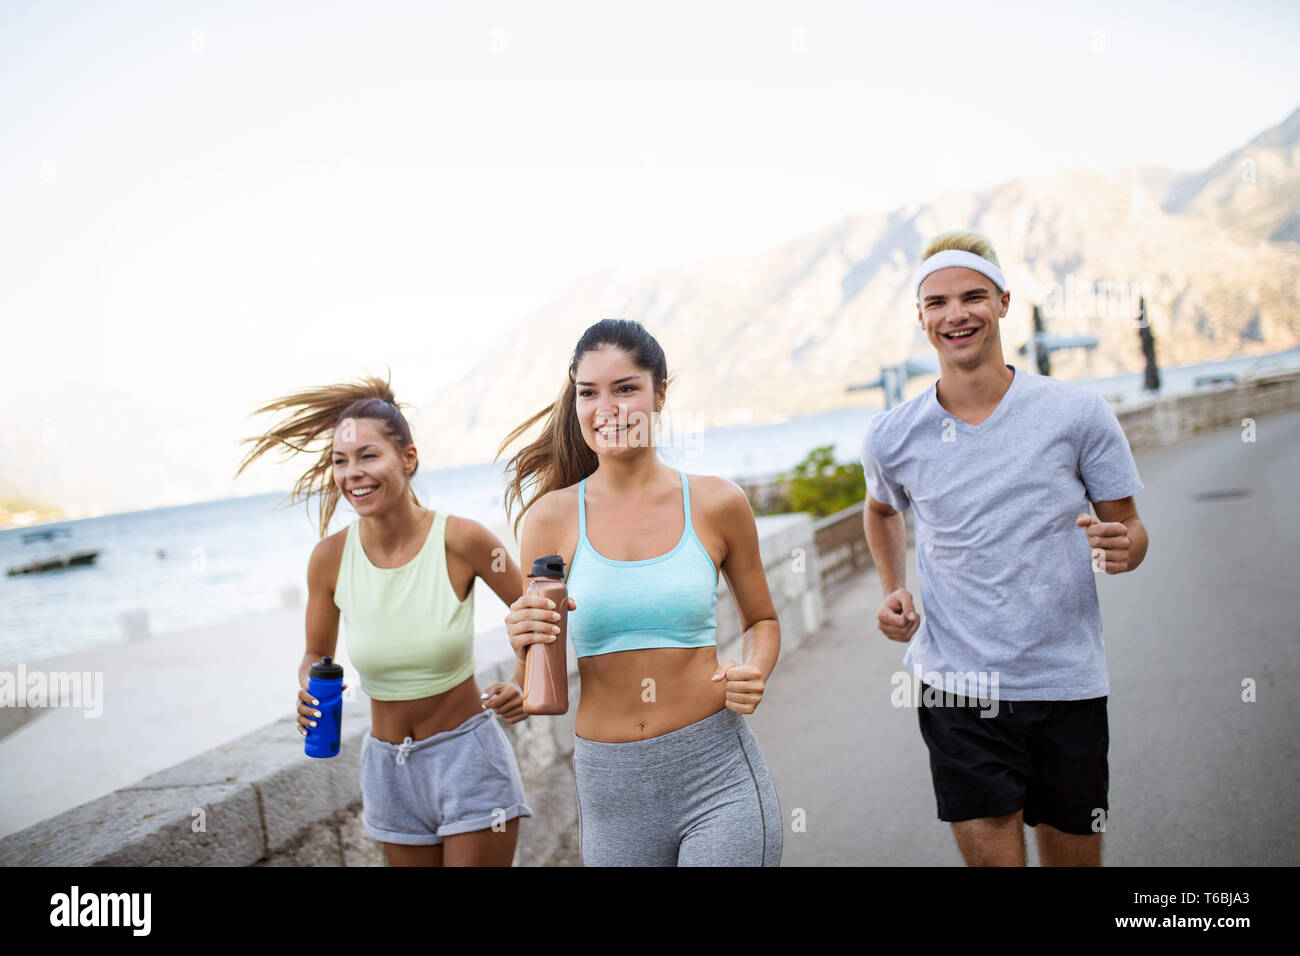 Glückliche Menschen Joggen im Freien. Laufen, Sport, Bewegung und gesunde Lebensweise Konzept Stockfoto